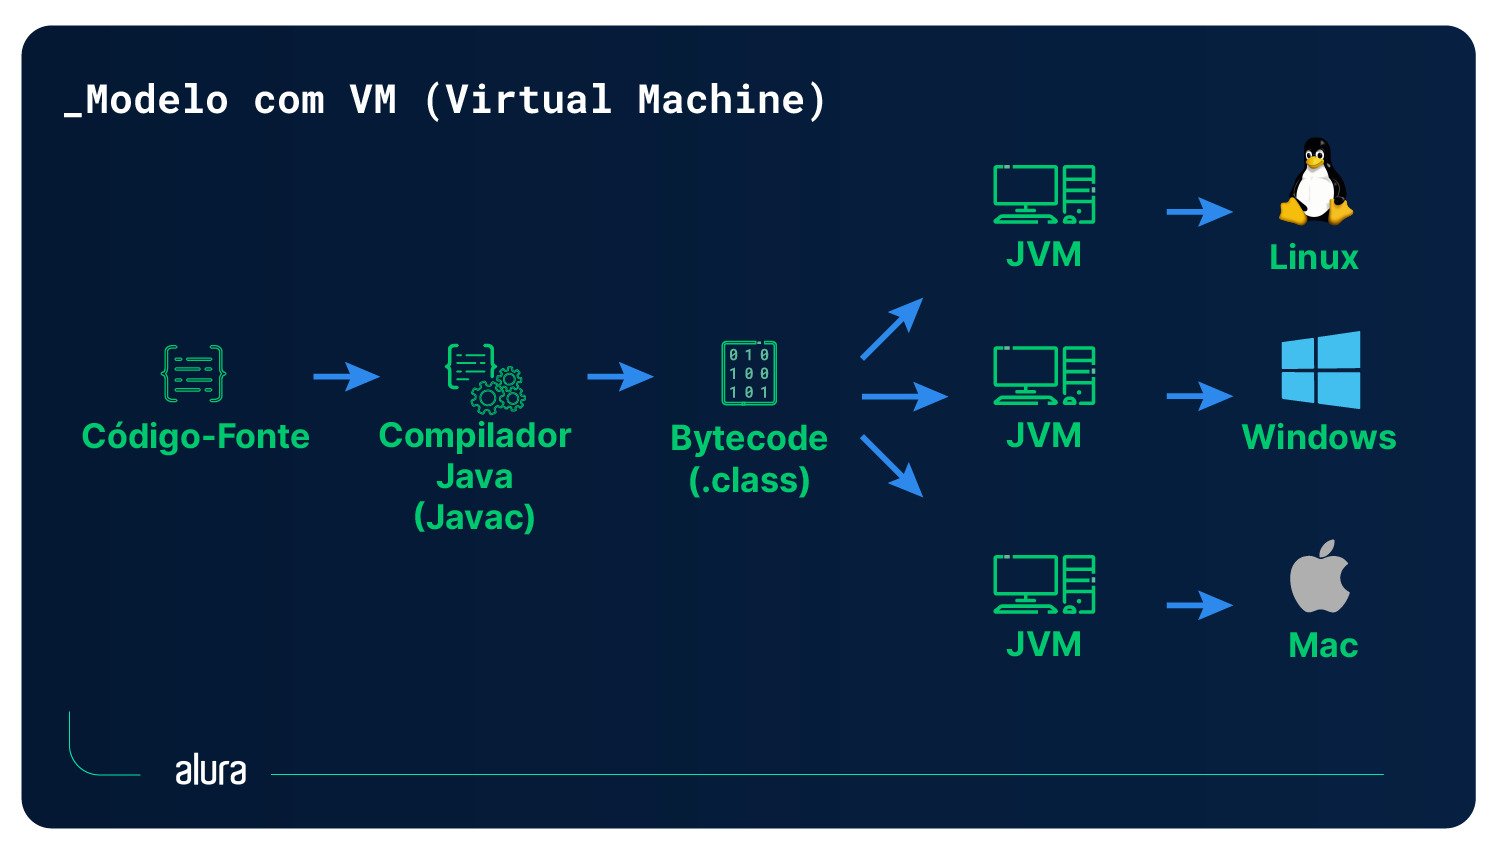 Diagrama ilustrando o modelo com a JVM (Java Virtual Machine).